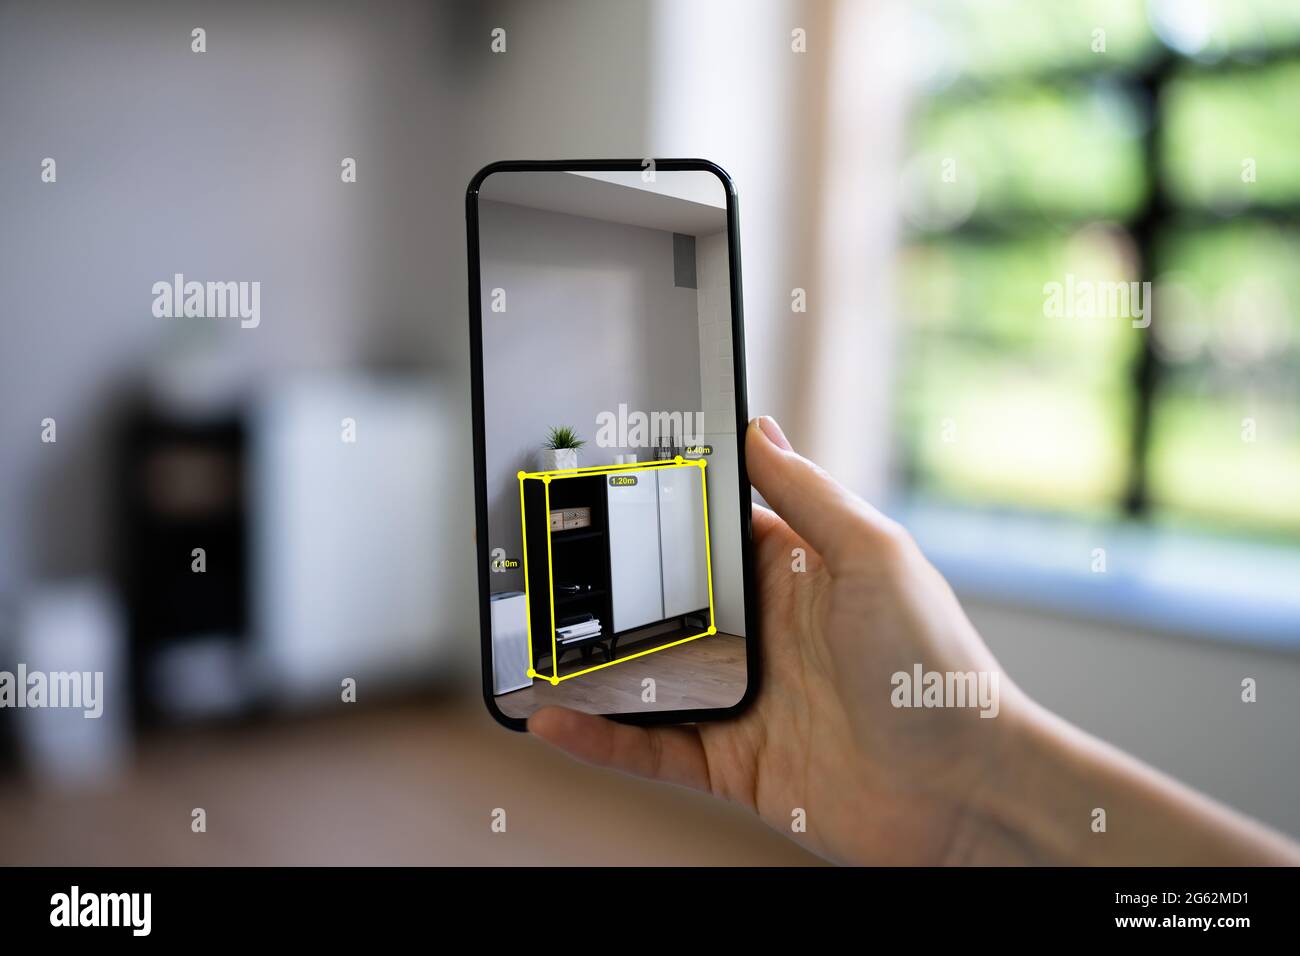 AR Mobile Phone Furniture Measurement App And Virtual Meter Stock Photo